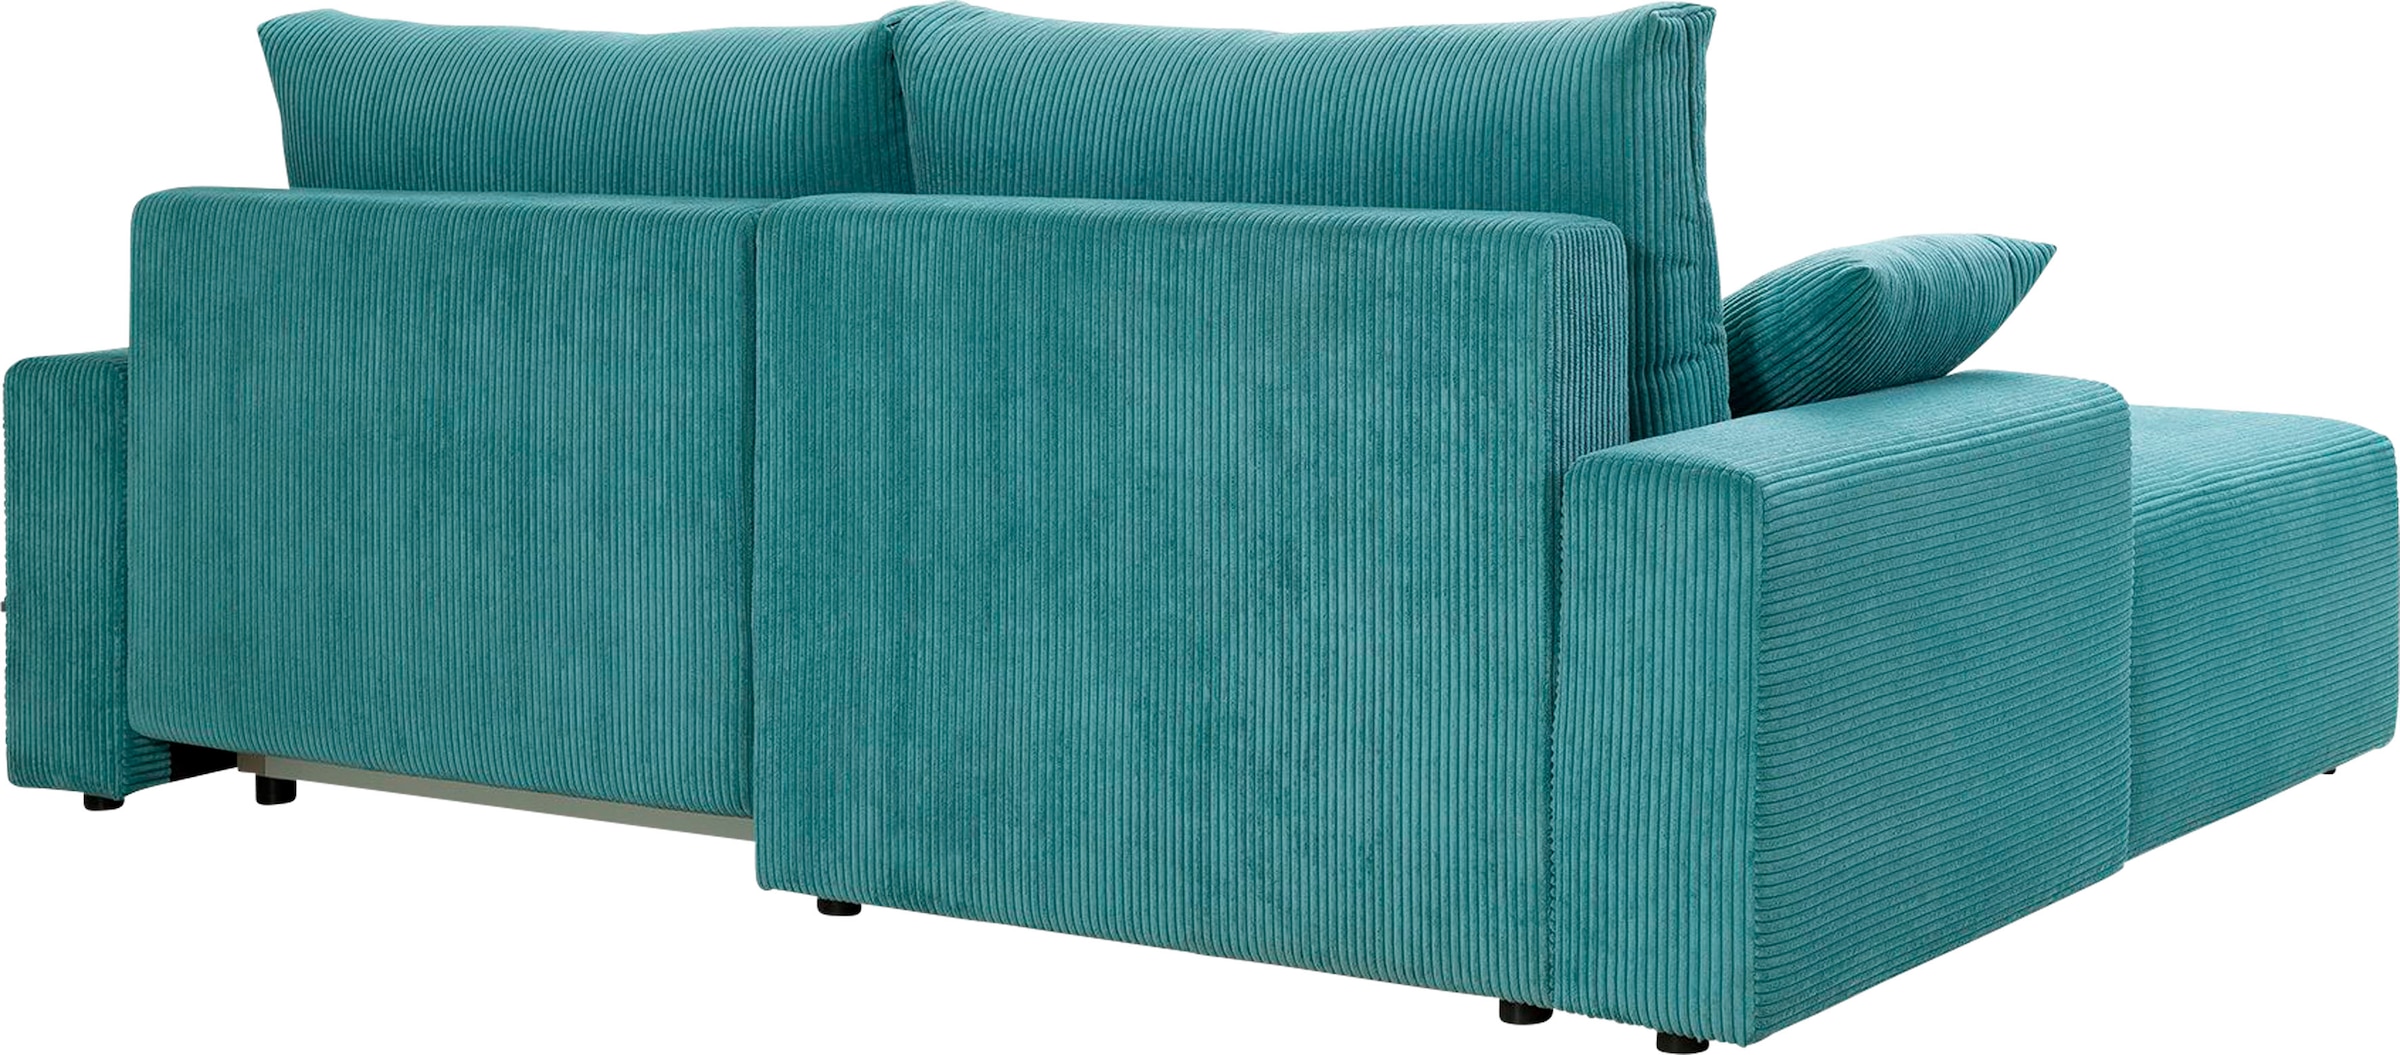 exxpo - sofa fashion Bettfunktion verschiedenen Cord-Farben kaufen und Bettkasten jetzt »Orinoko«, inklusive Ecksofa in